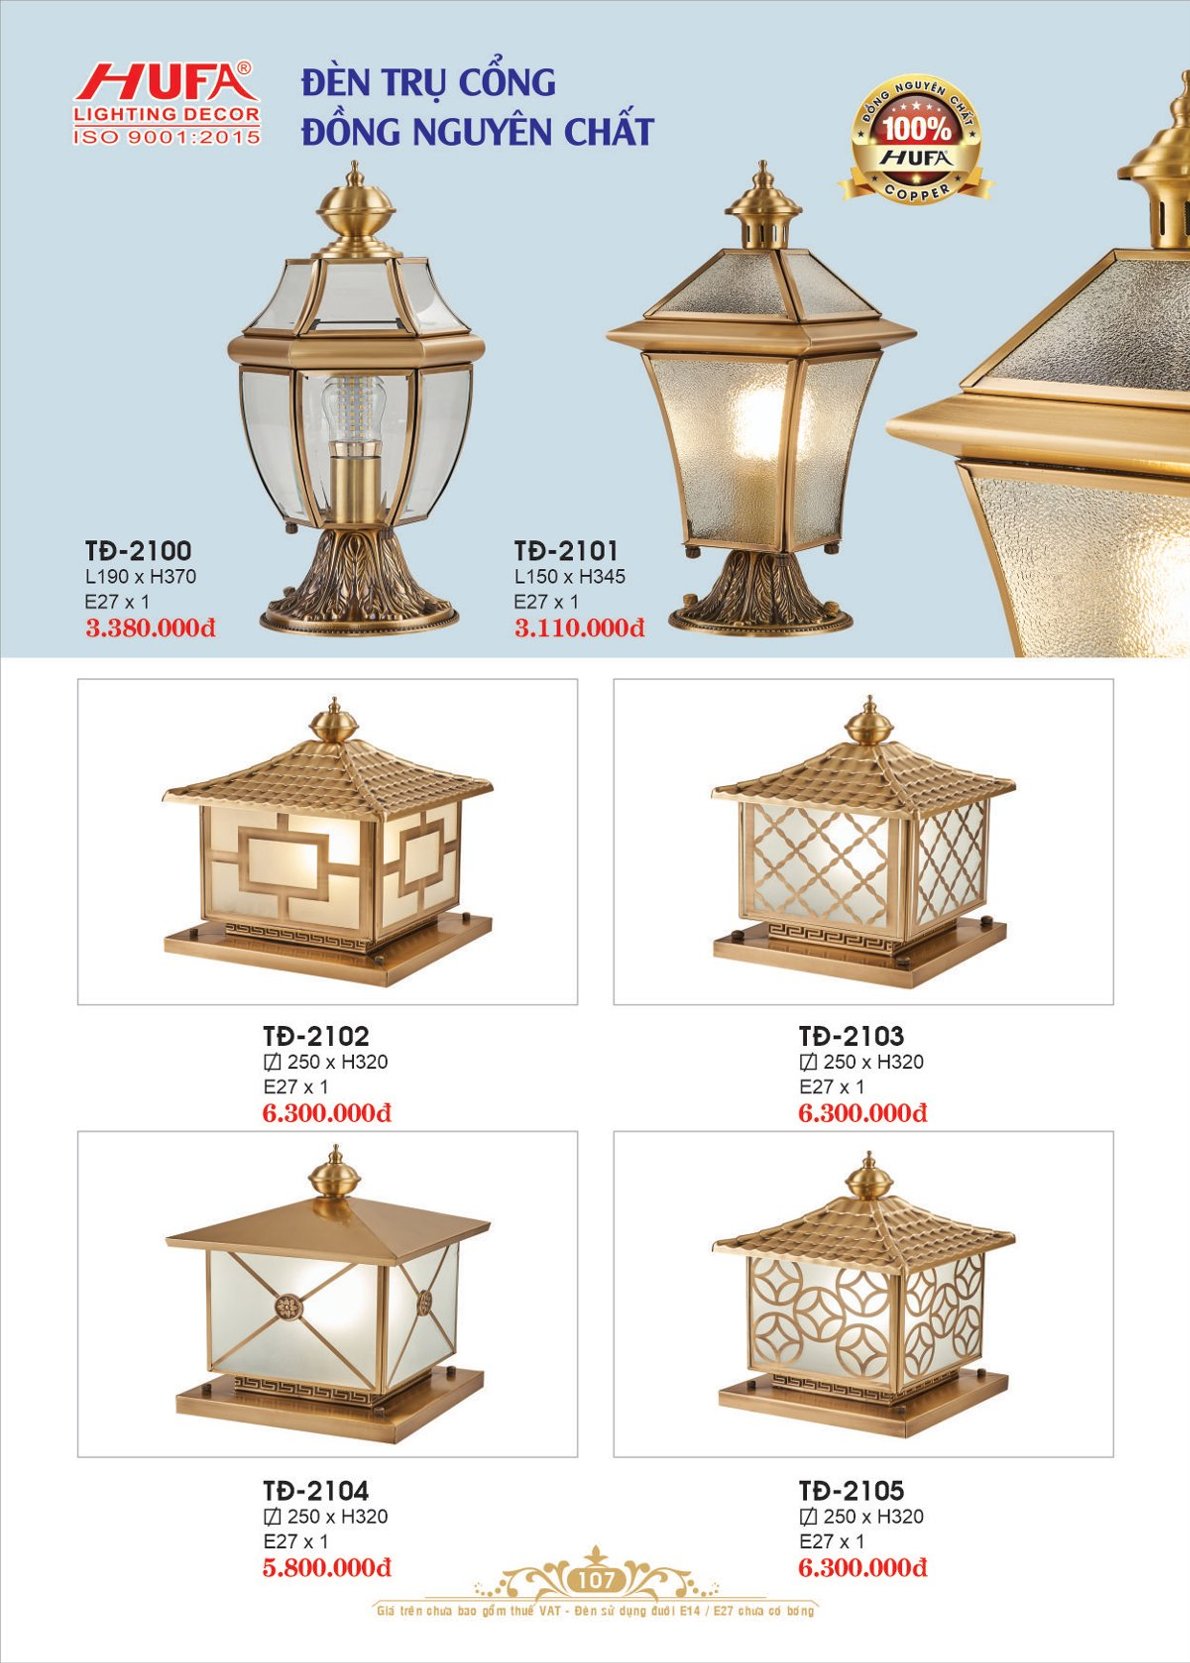 đèn trụ cổng đồng, đèn cổng, đèn trang trí Hufa TĐ 2101, đèn trang trí cao cấp, đèn trang trí, hufa